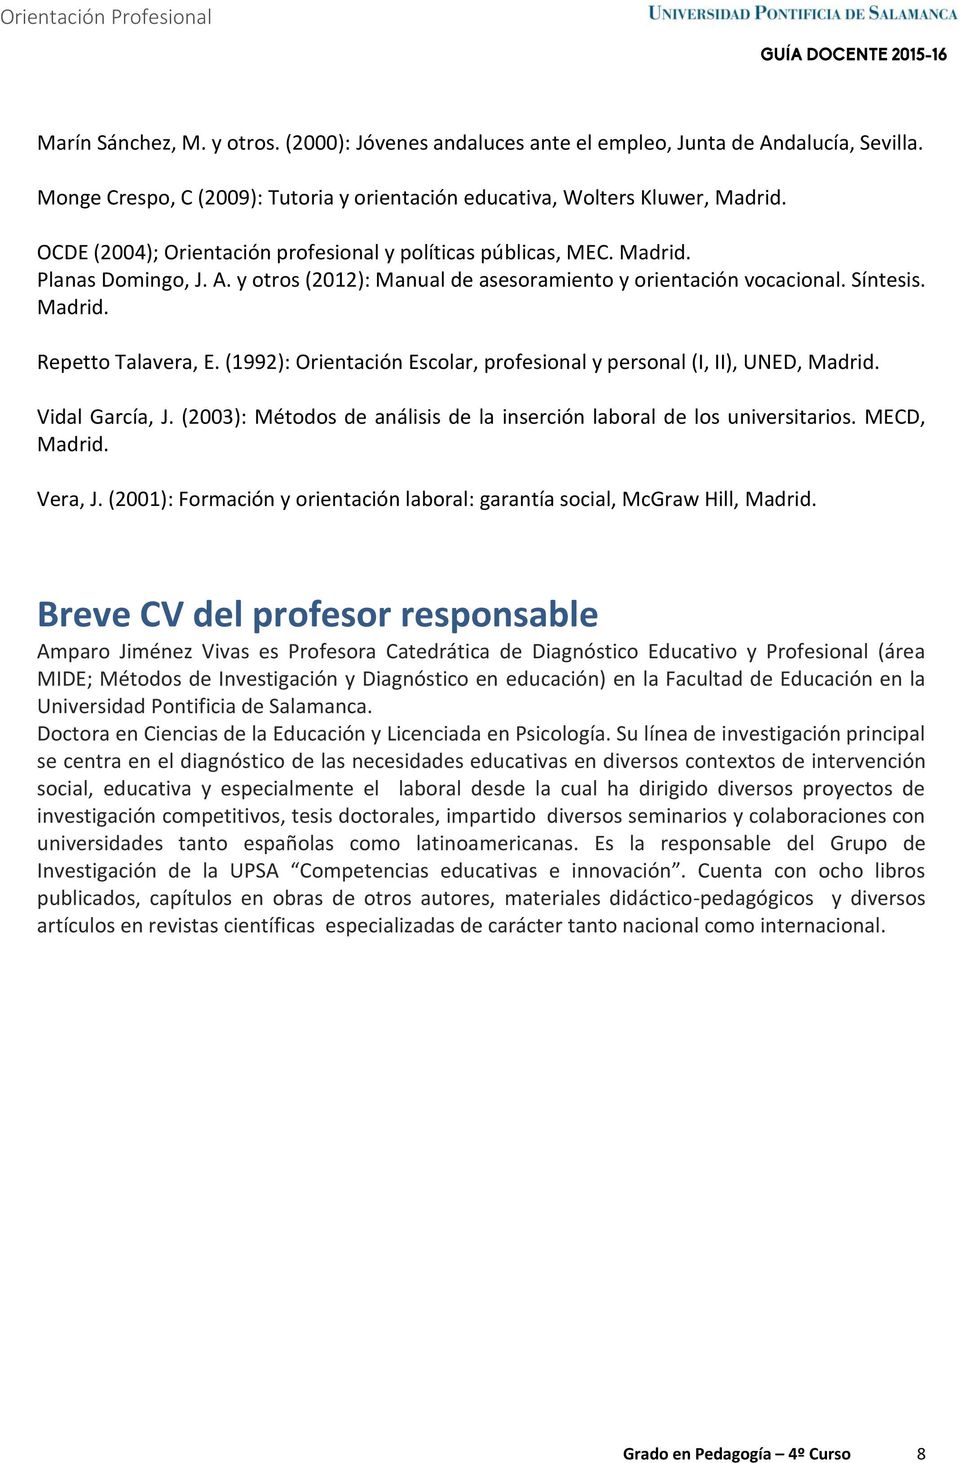 (1992): Orientación Escolar, profesional y personal (I, II), UNED, Madrid. Vidal García, J. (2003): Métodos de análisis de la inserción laboral de los universitarios. MECD, Madrid. Vera, J.